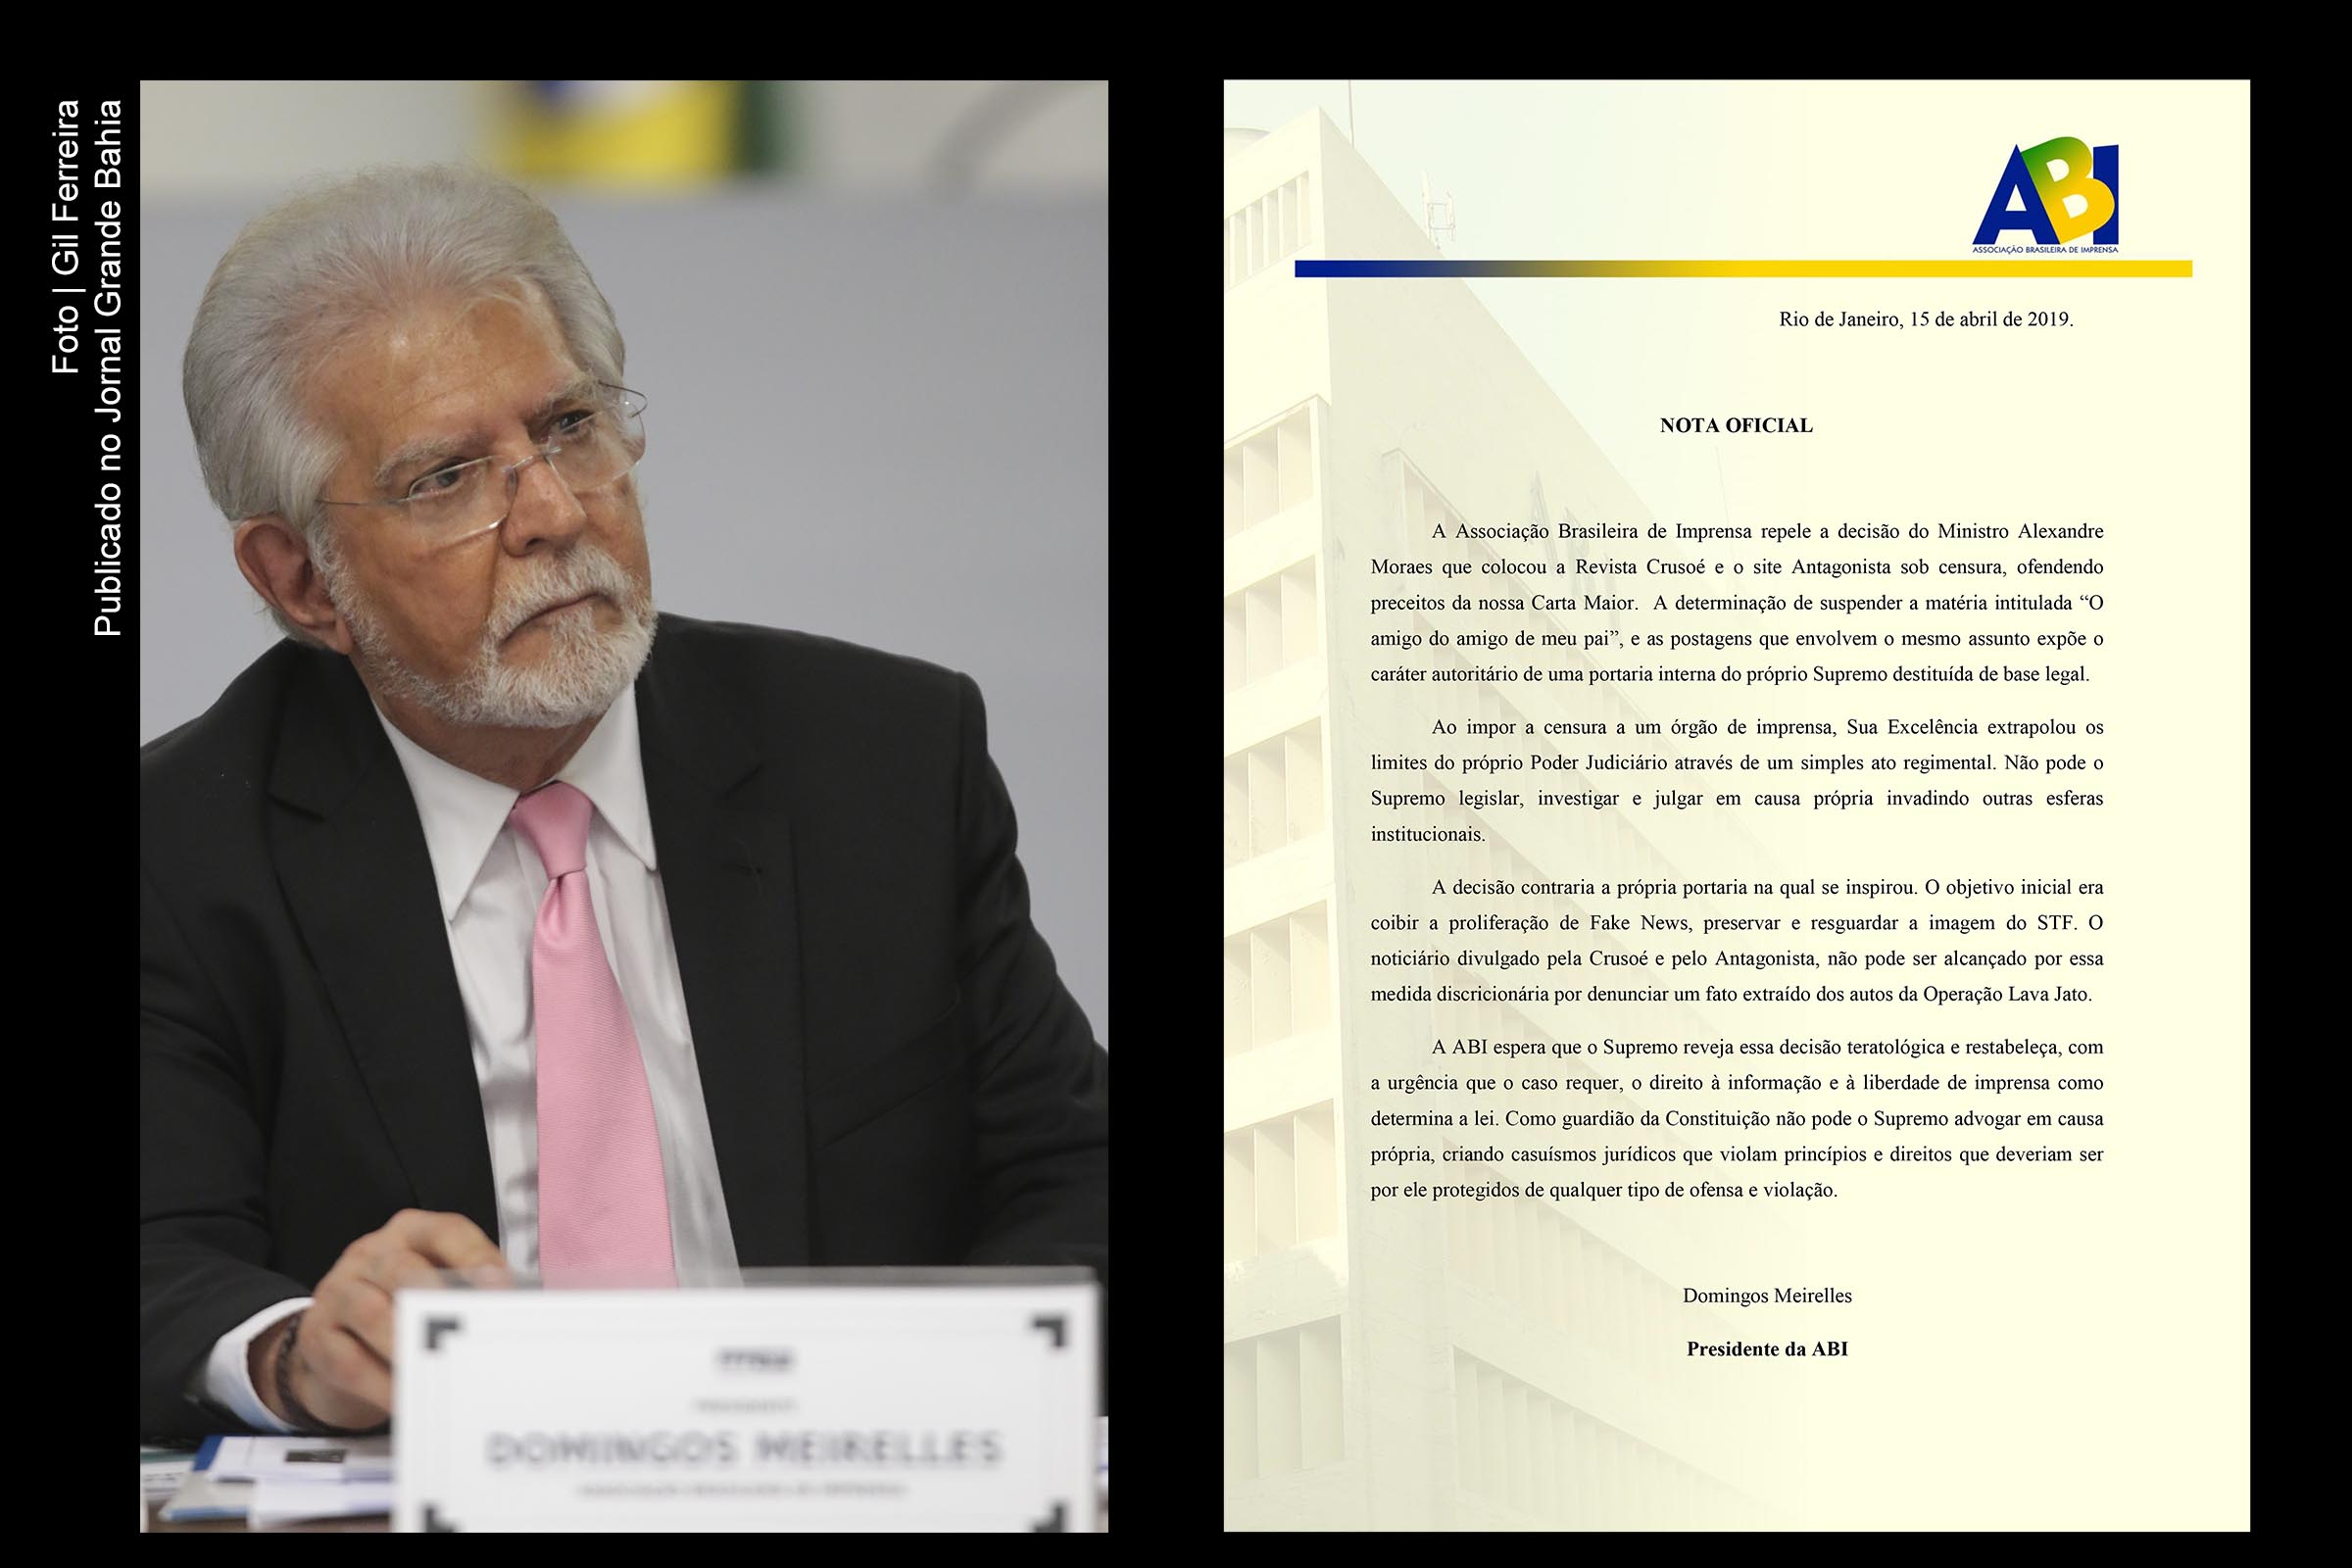 Jornalista Domingos Meirelles, presidente da ABI Nacional, repudia censura imposta pelo ministro Alexandre Moraes contra o site de notícias O Antagonista e a revista Crusoé.